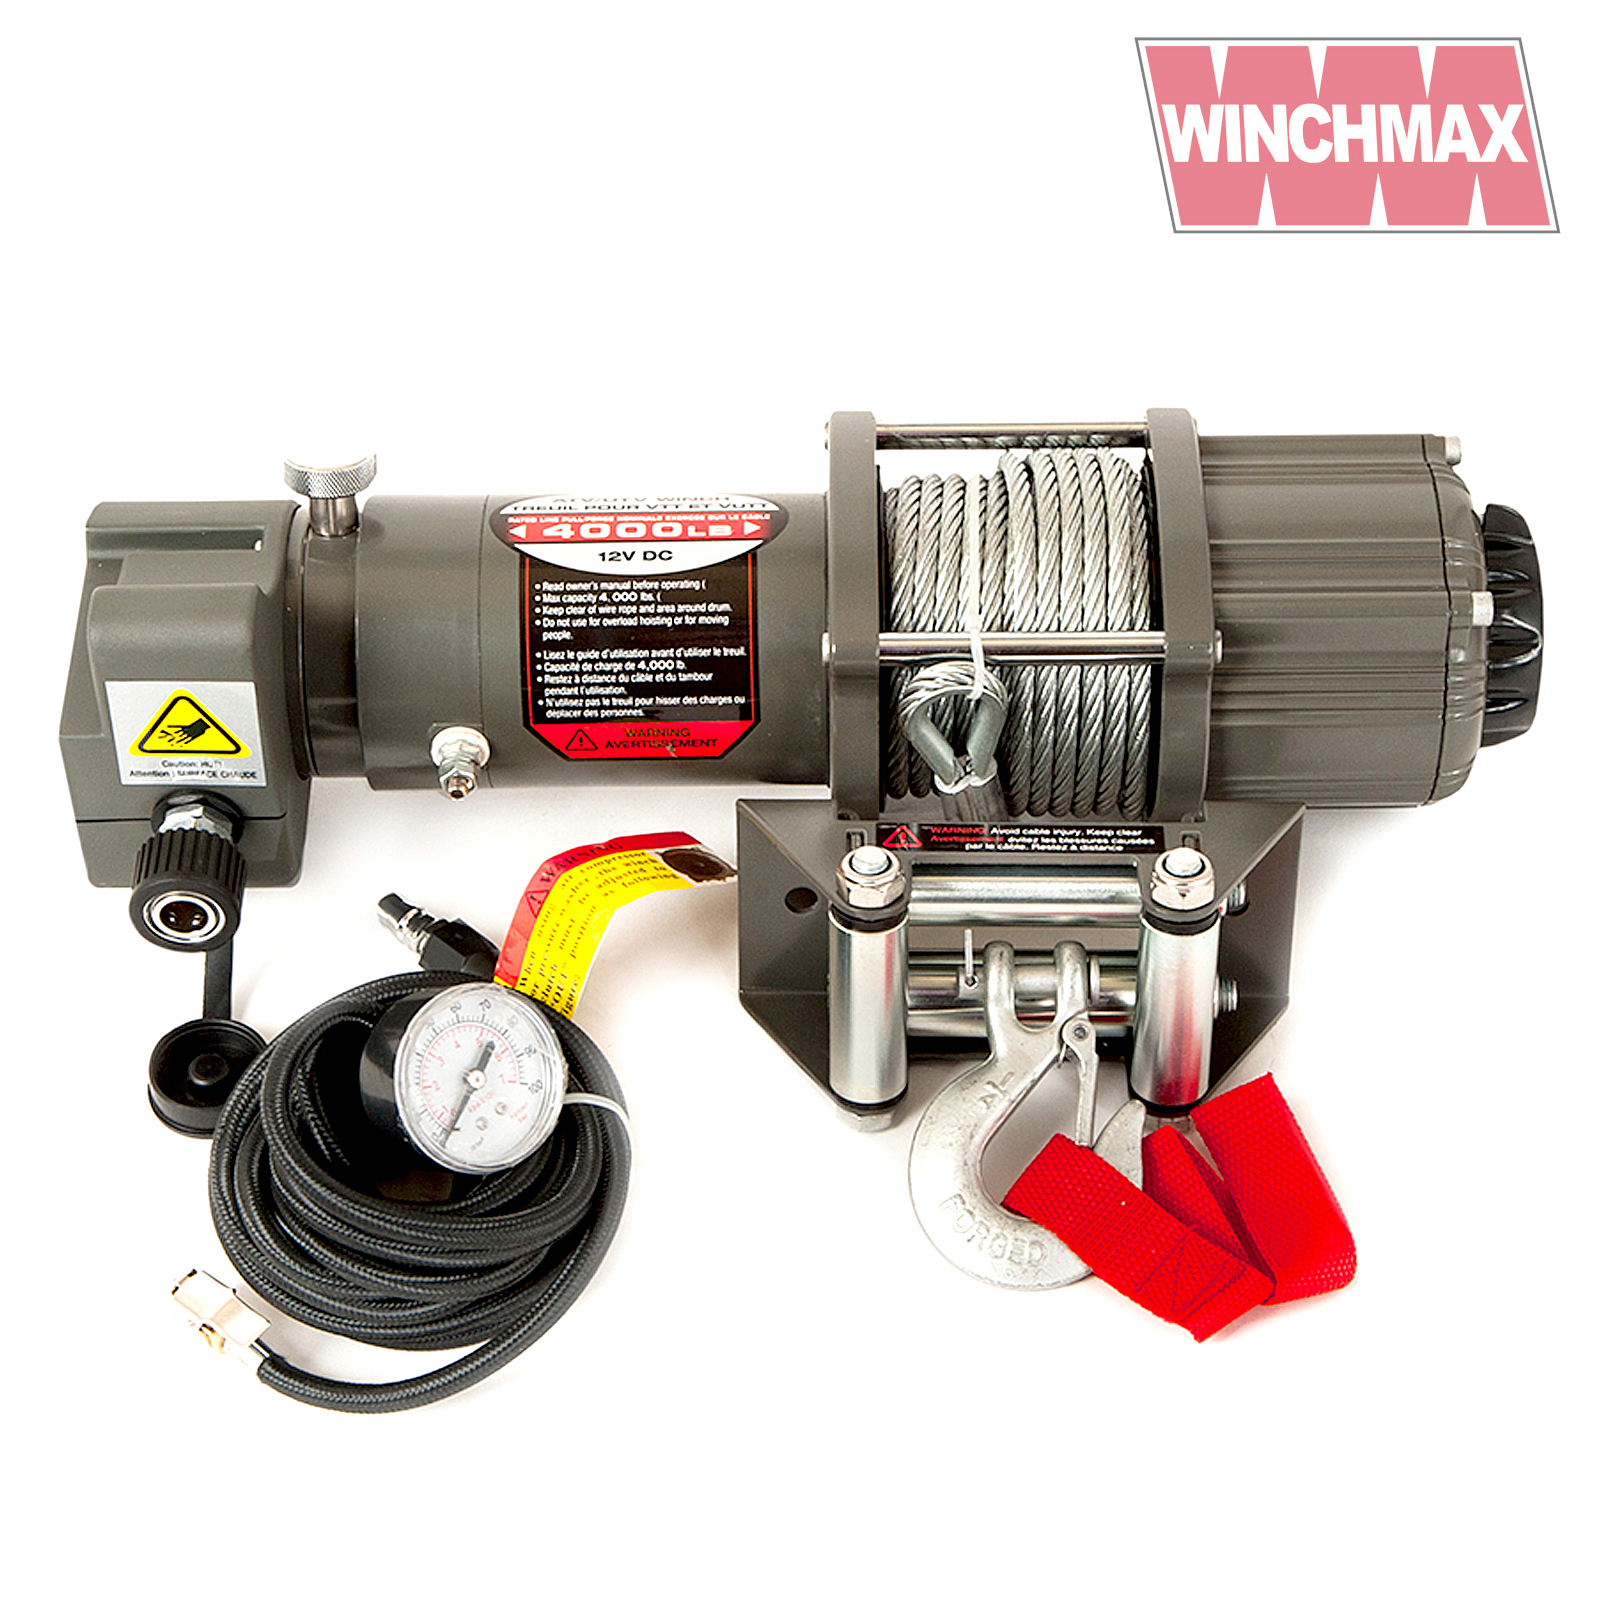 Winchmax 4,000lb Winch and Air Compressor